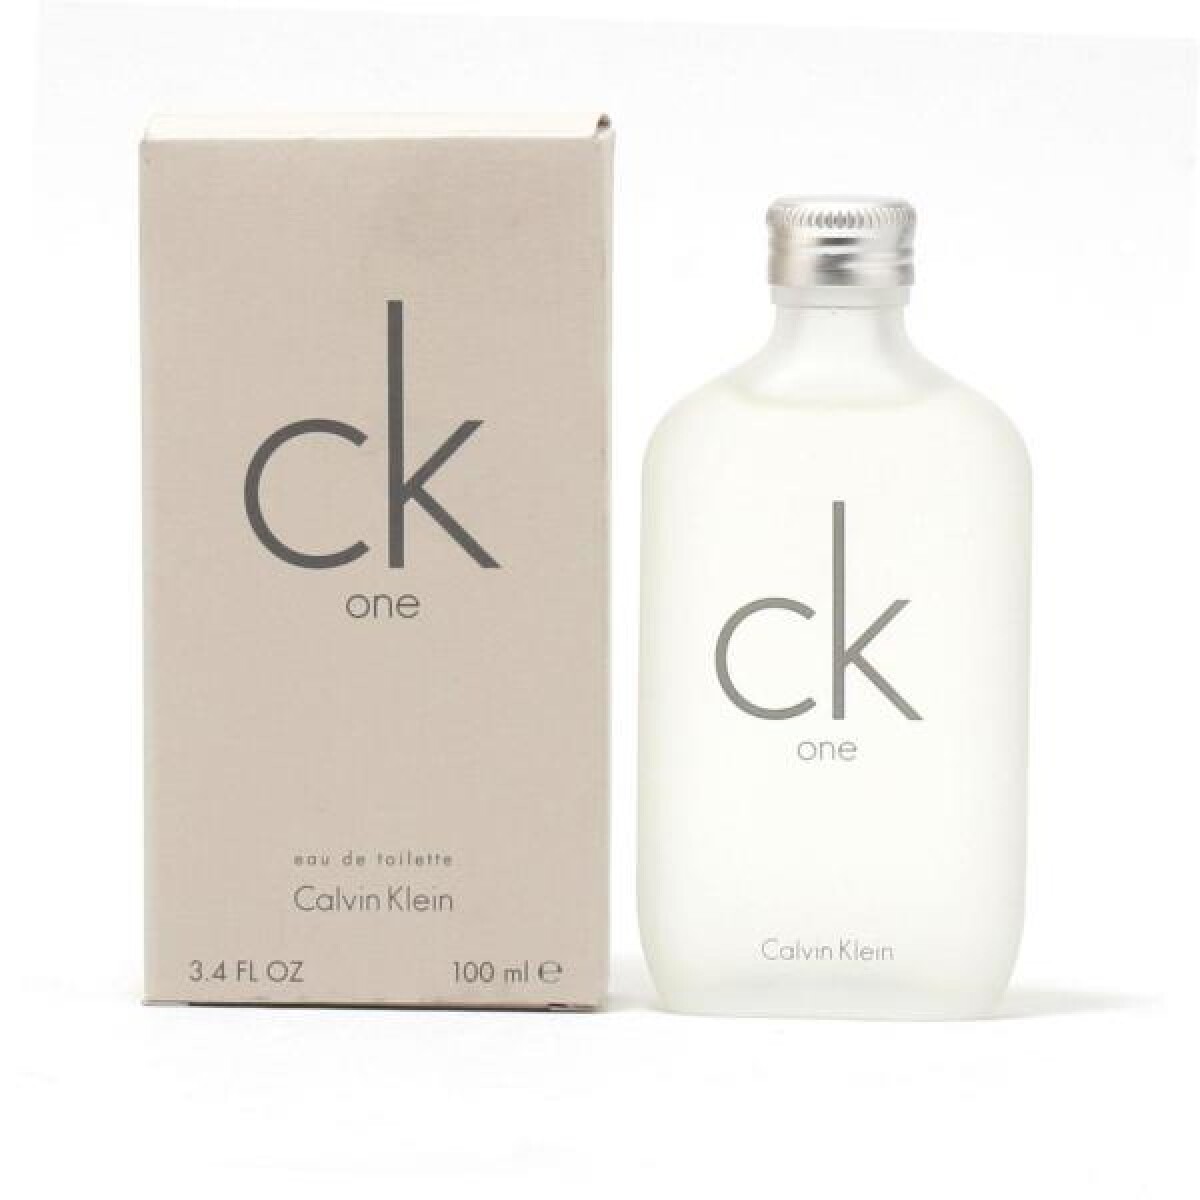 Perfume Calvin Klein CK One EDT - 100ml 